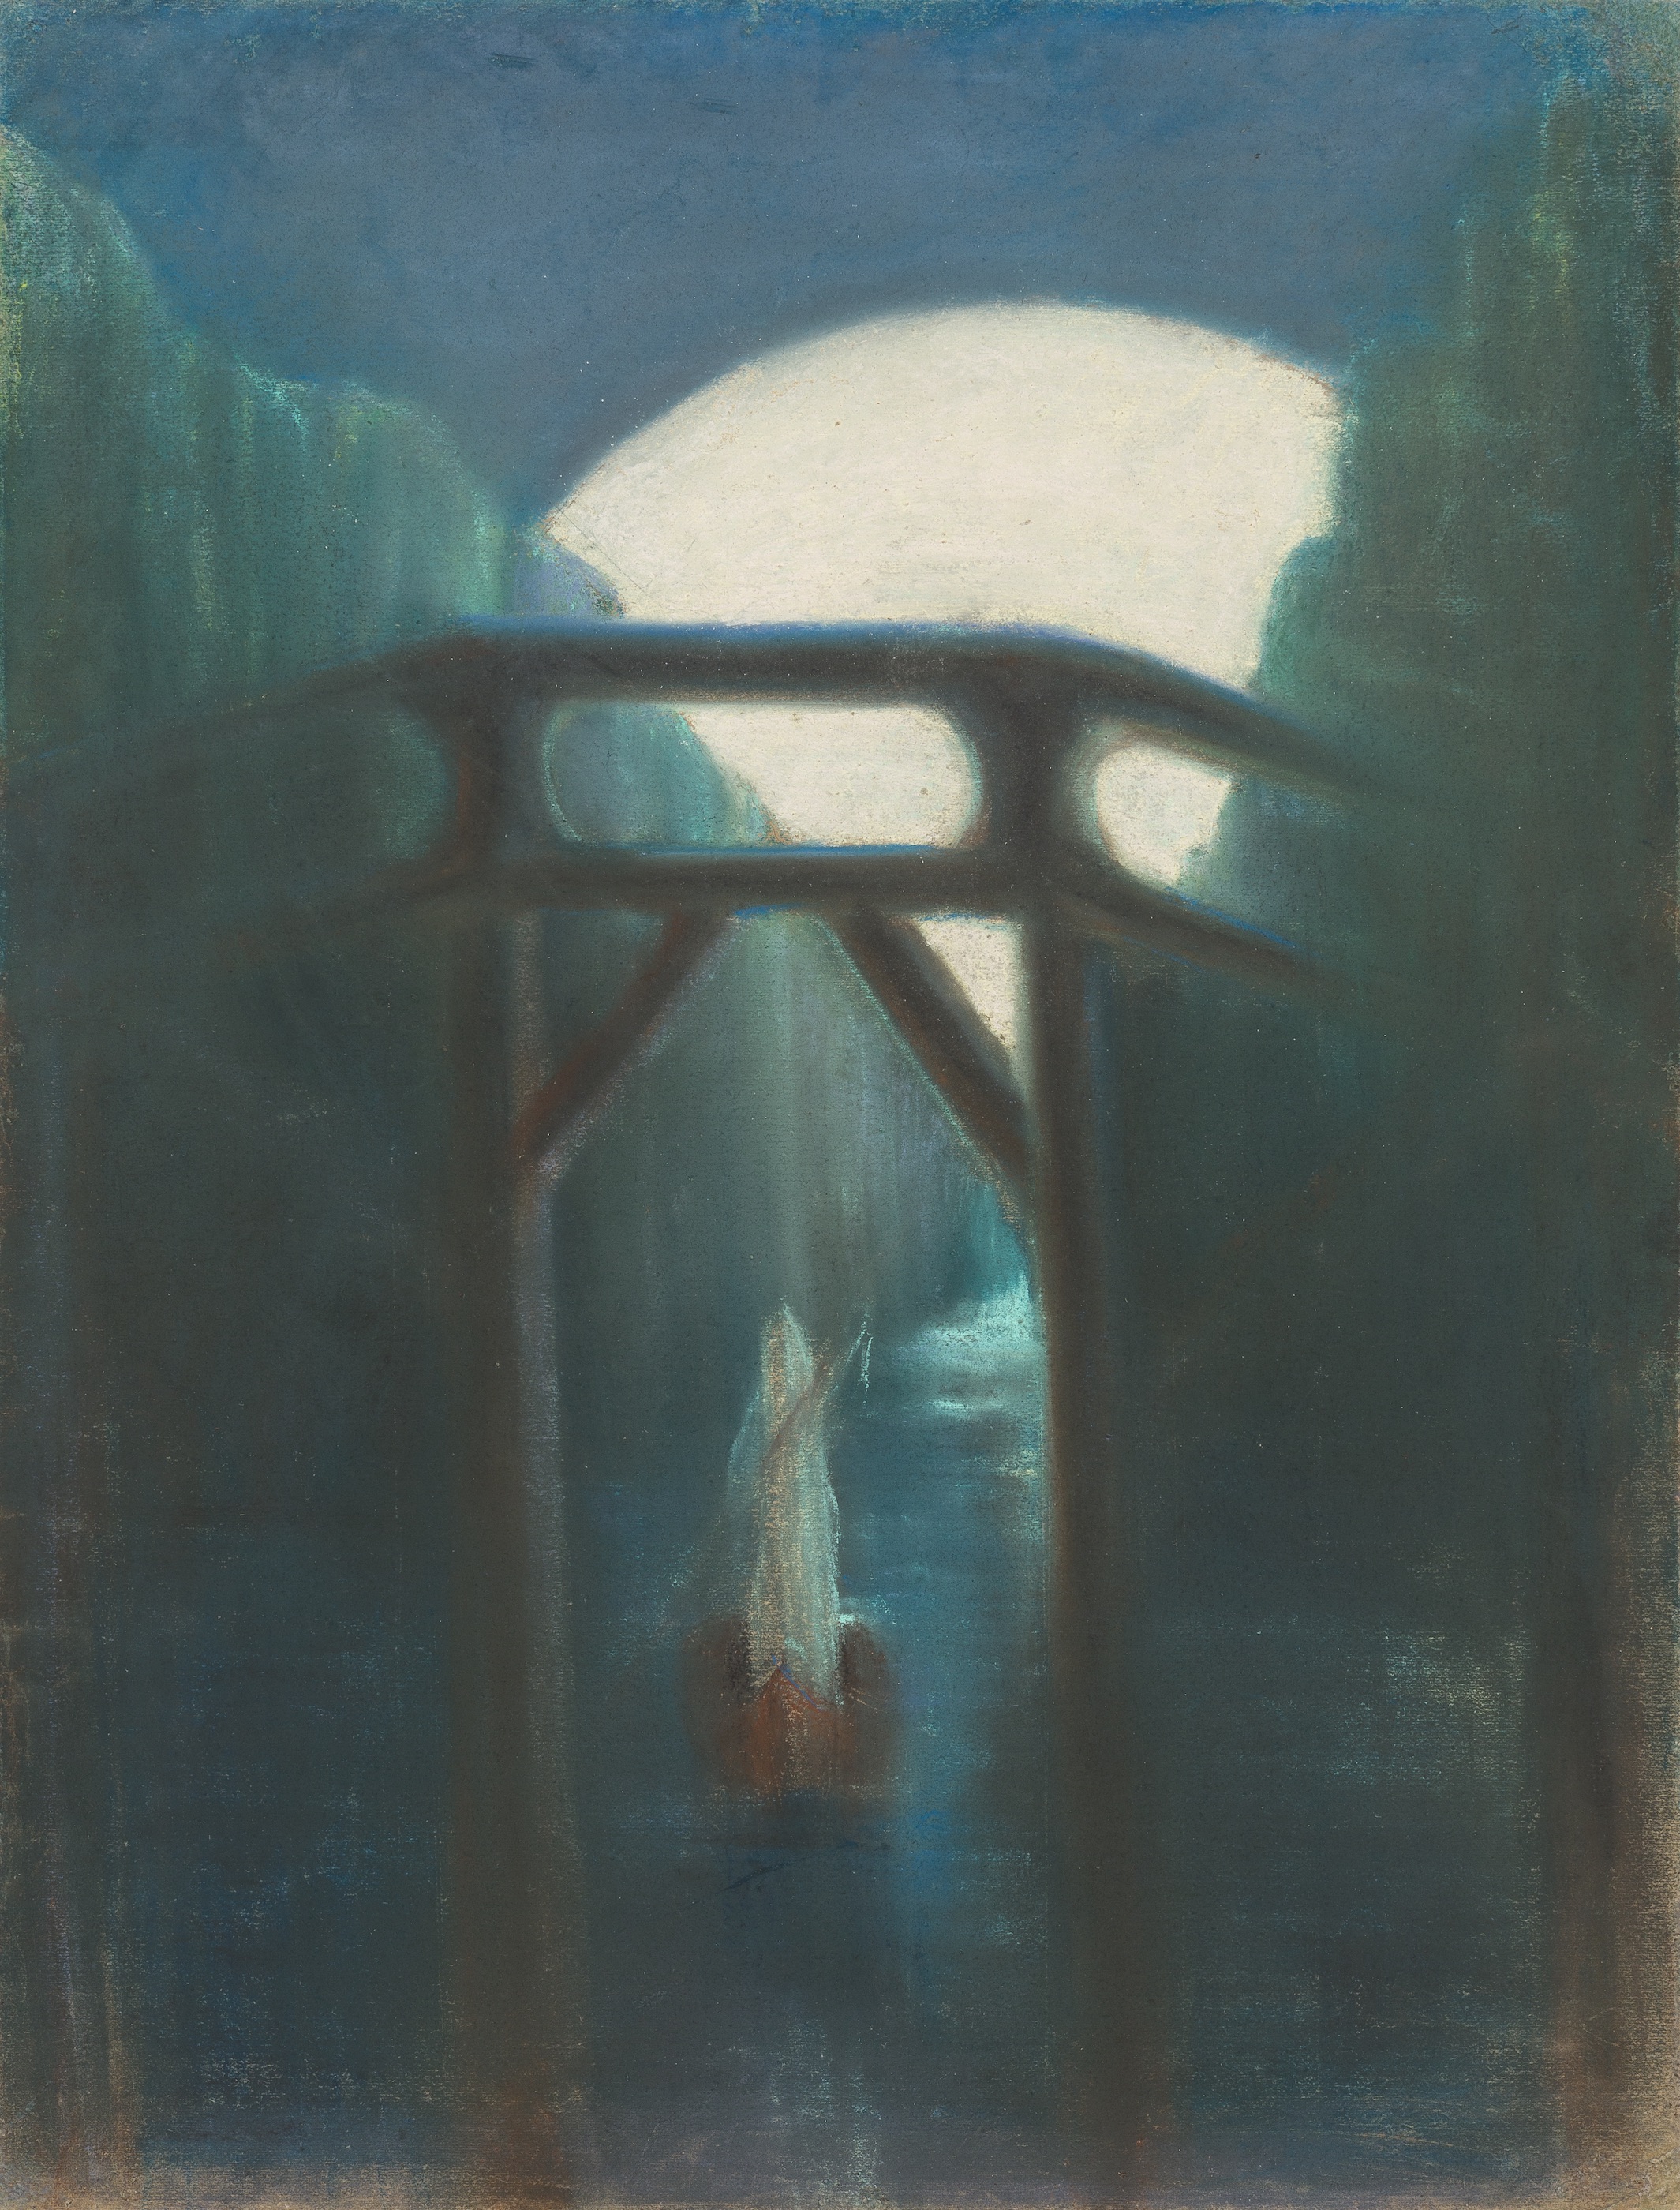 Noc by Mikalojus Konstantinas Čiurlionis - 1905 - 73,5 x 56 cm 